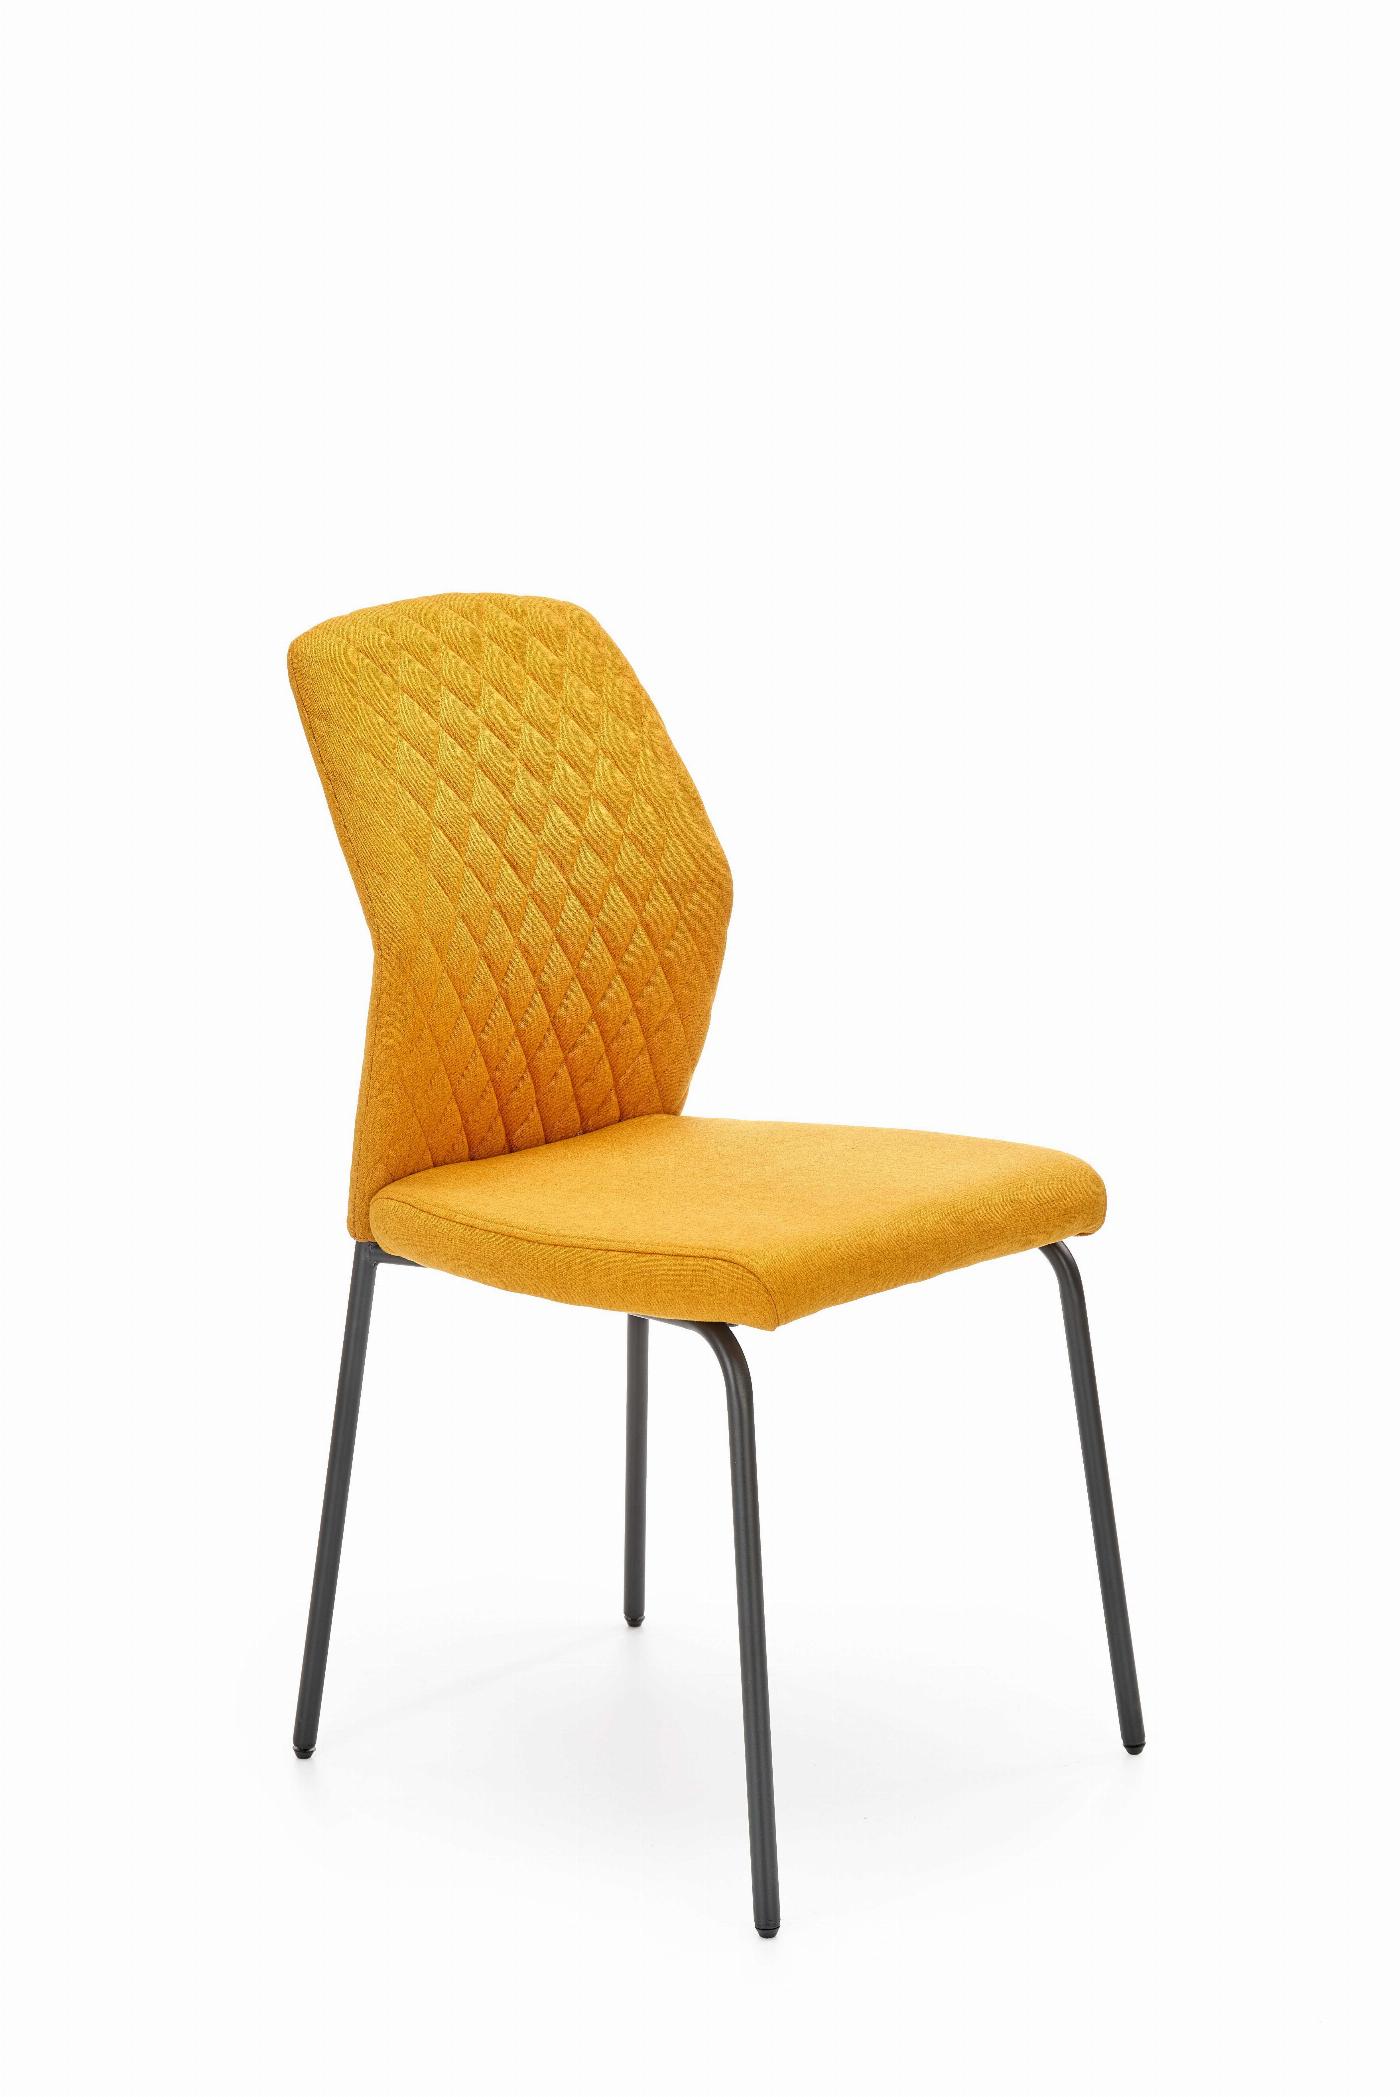 K461 krzesło musztardowy